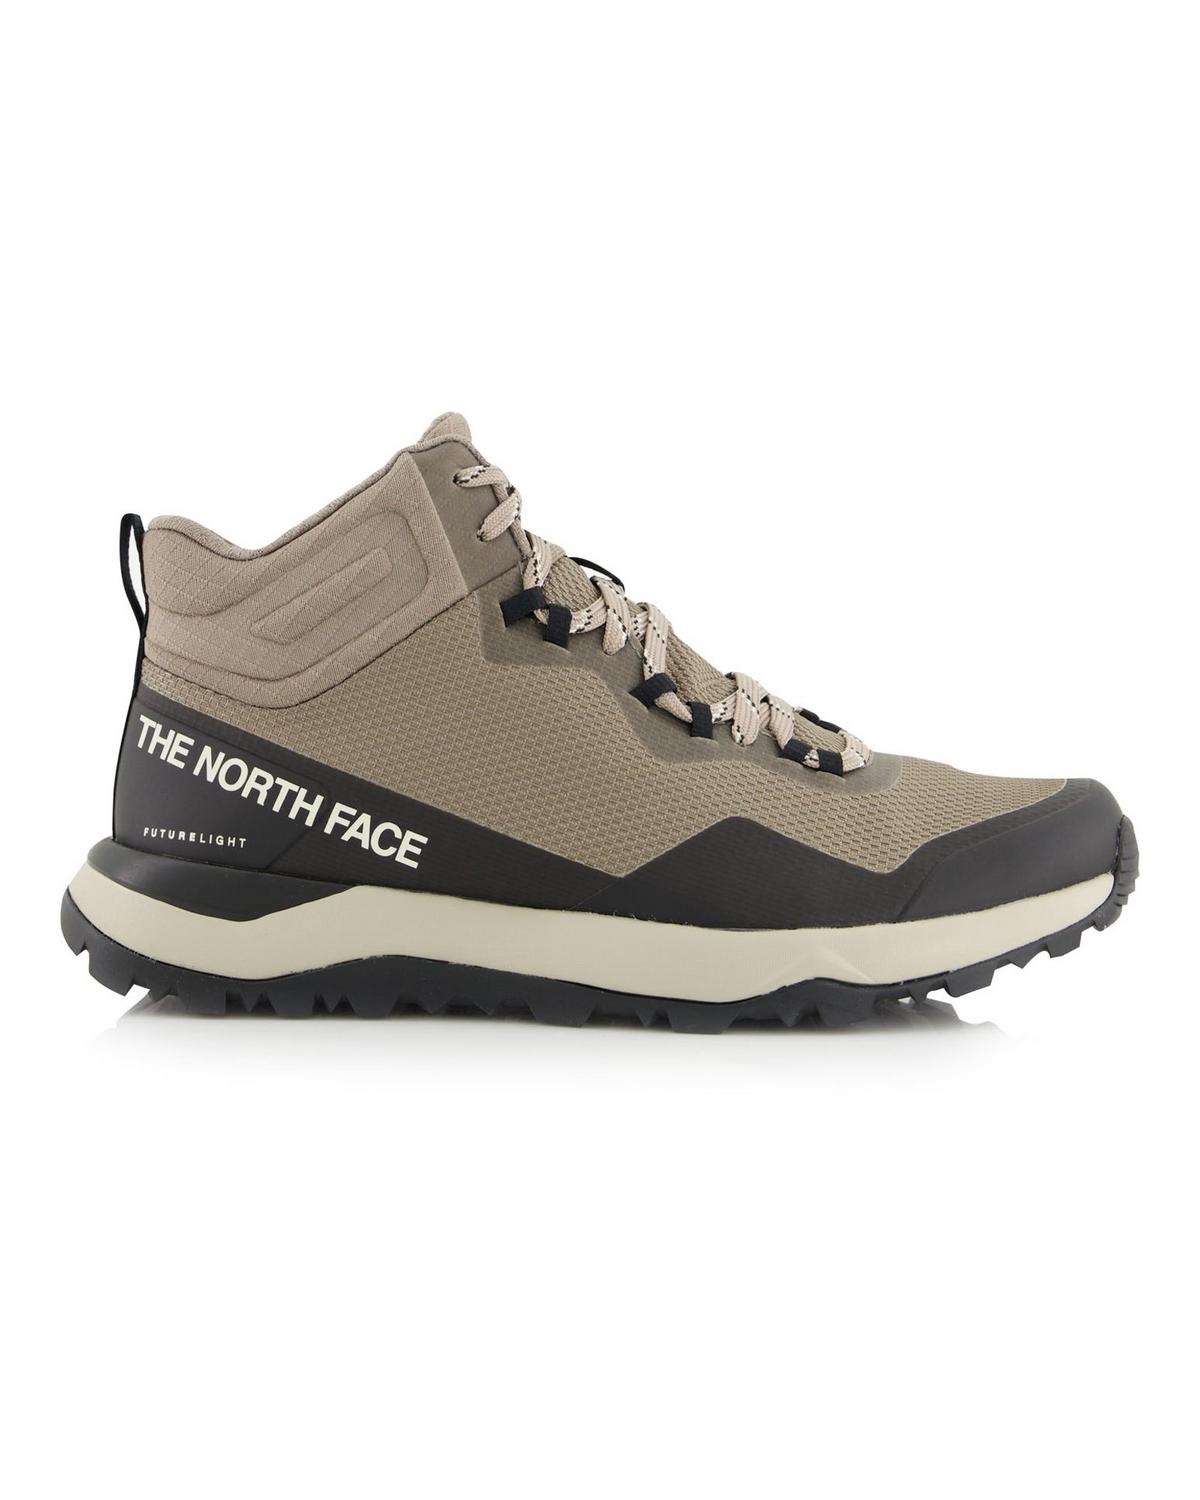 North Face Men’s Activist Mid FUTURELIGHT™ Hiking Boots -  Khaki